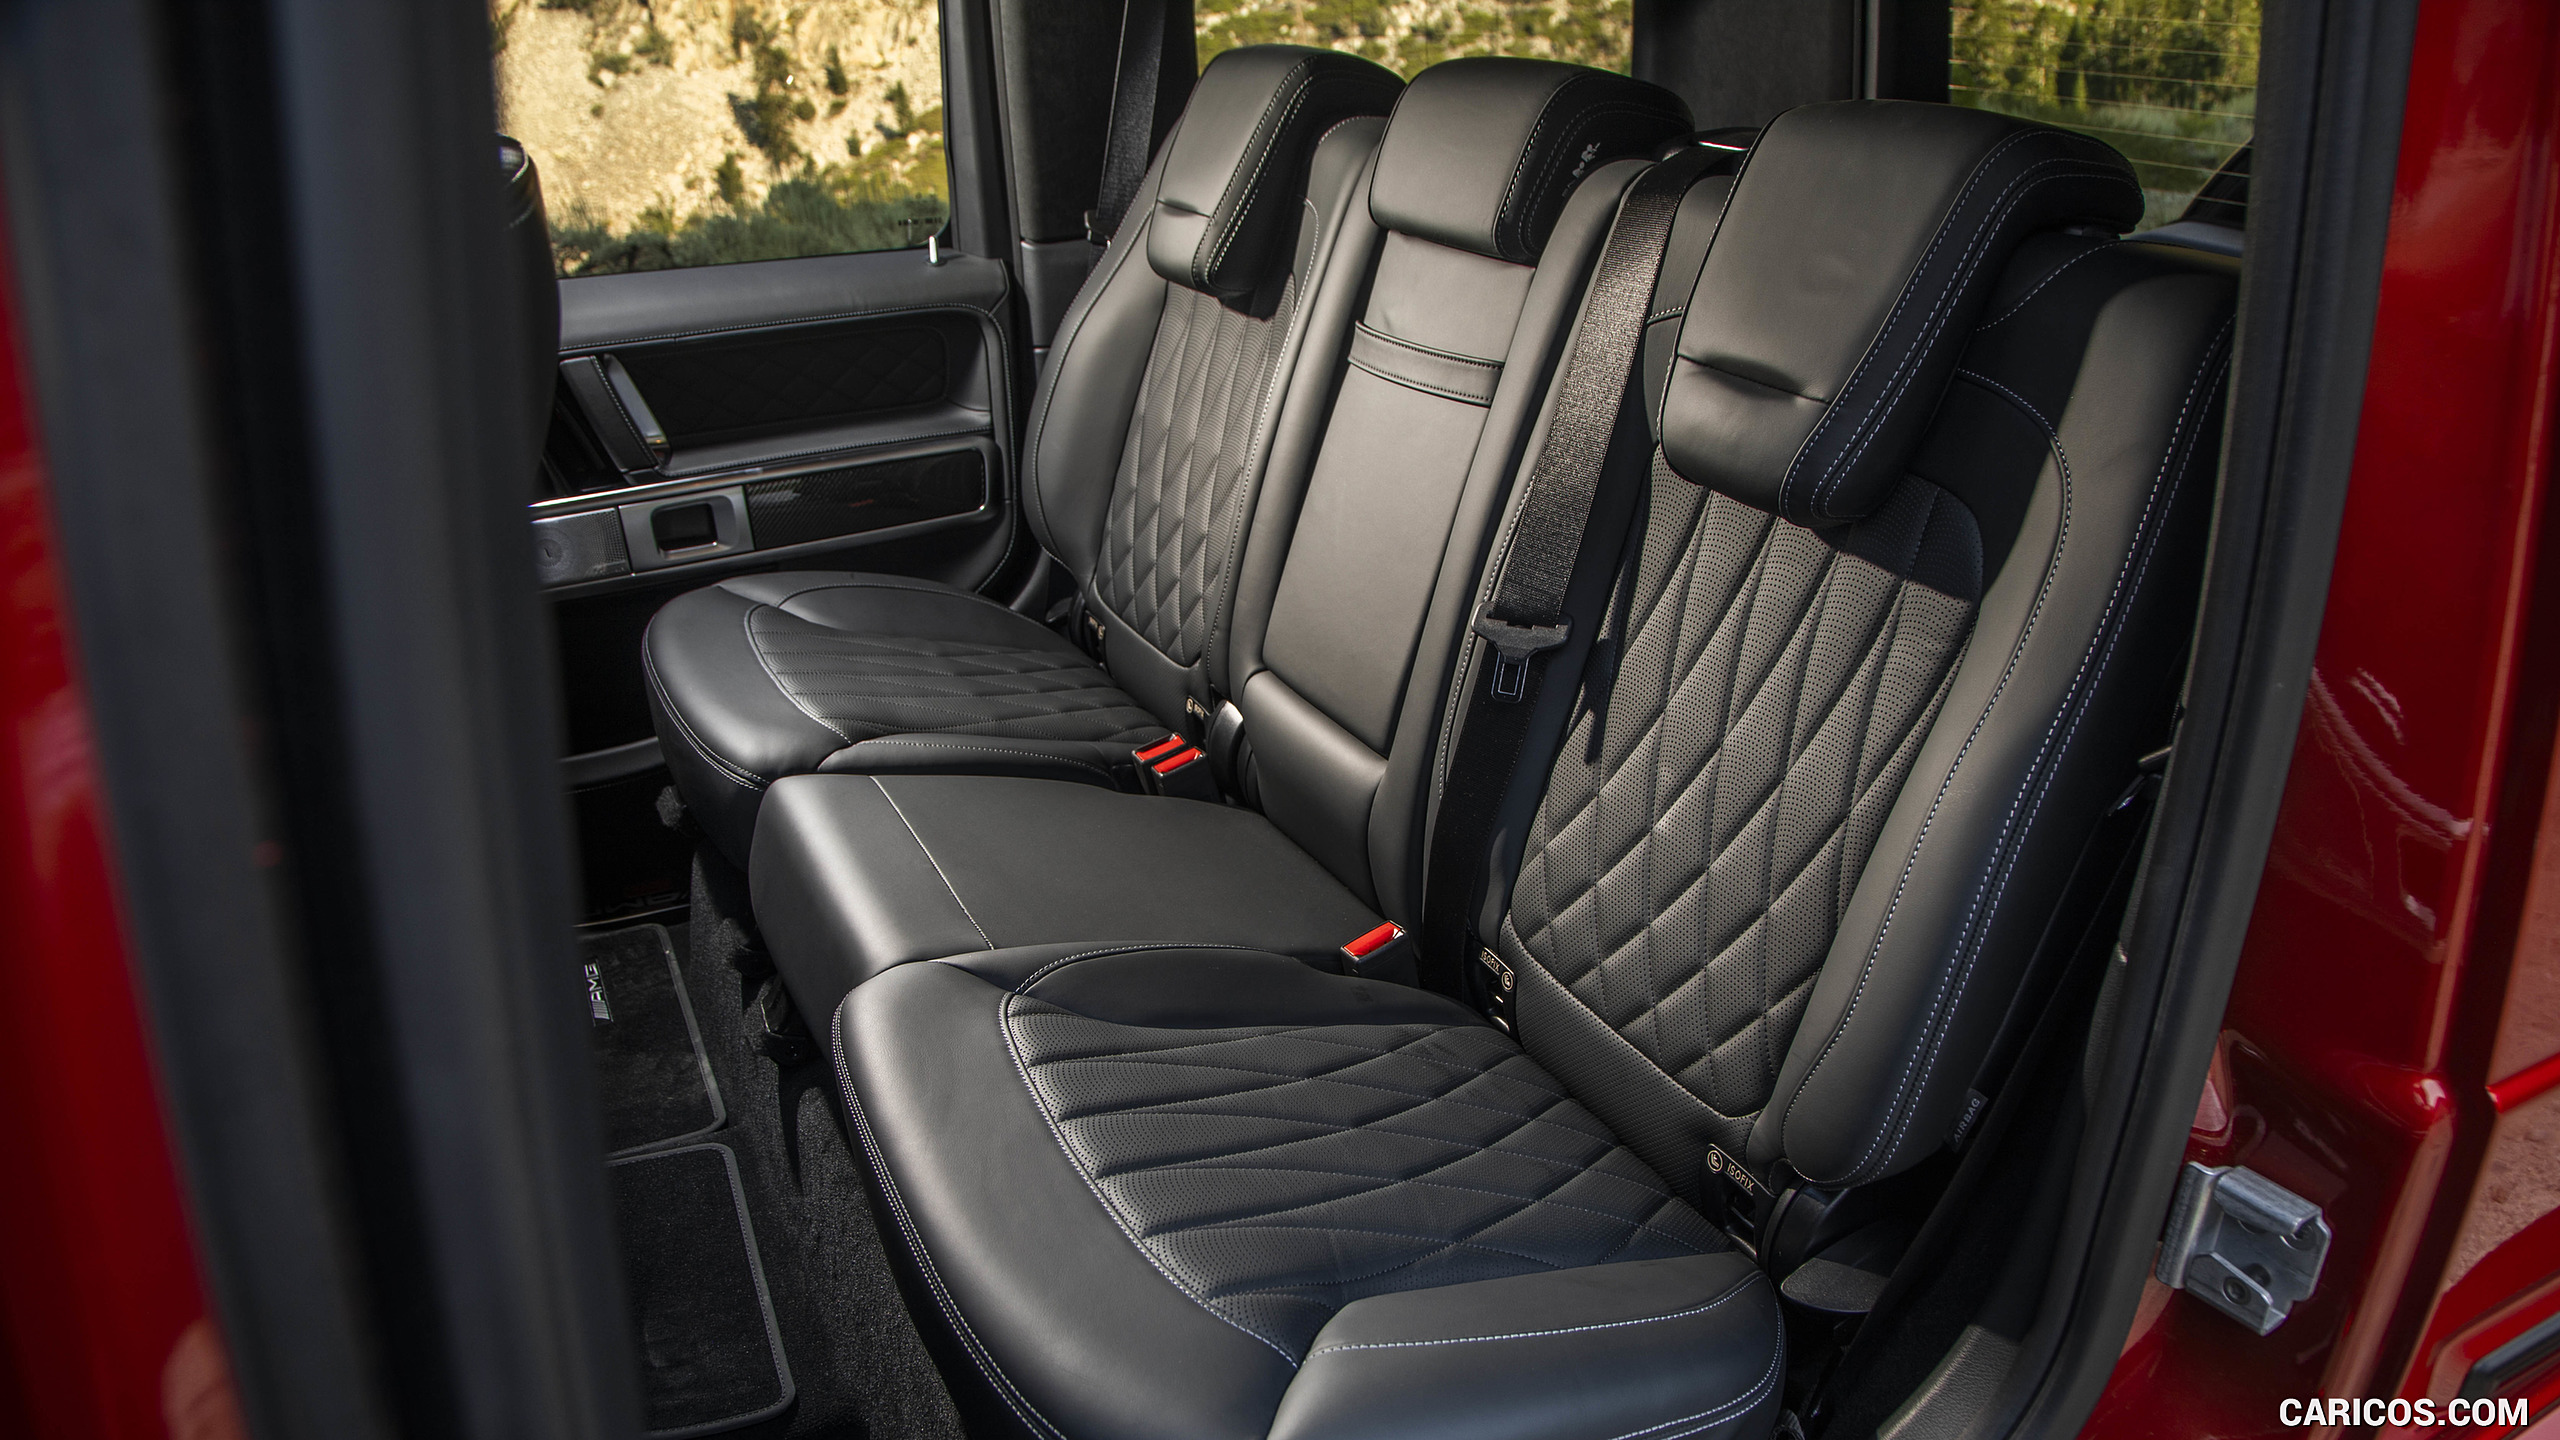 2019 Mercedes-AMG G63 (U.S.-Spec) - Interior, Rear Seats, #452 of 452